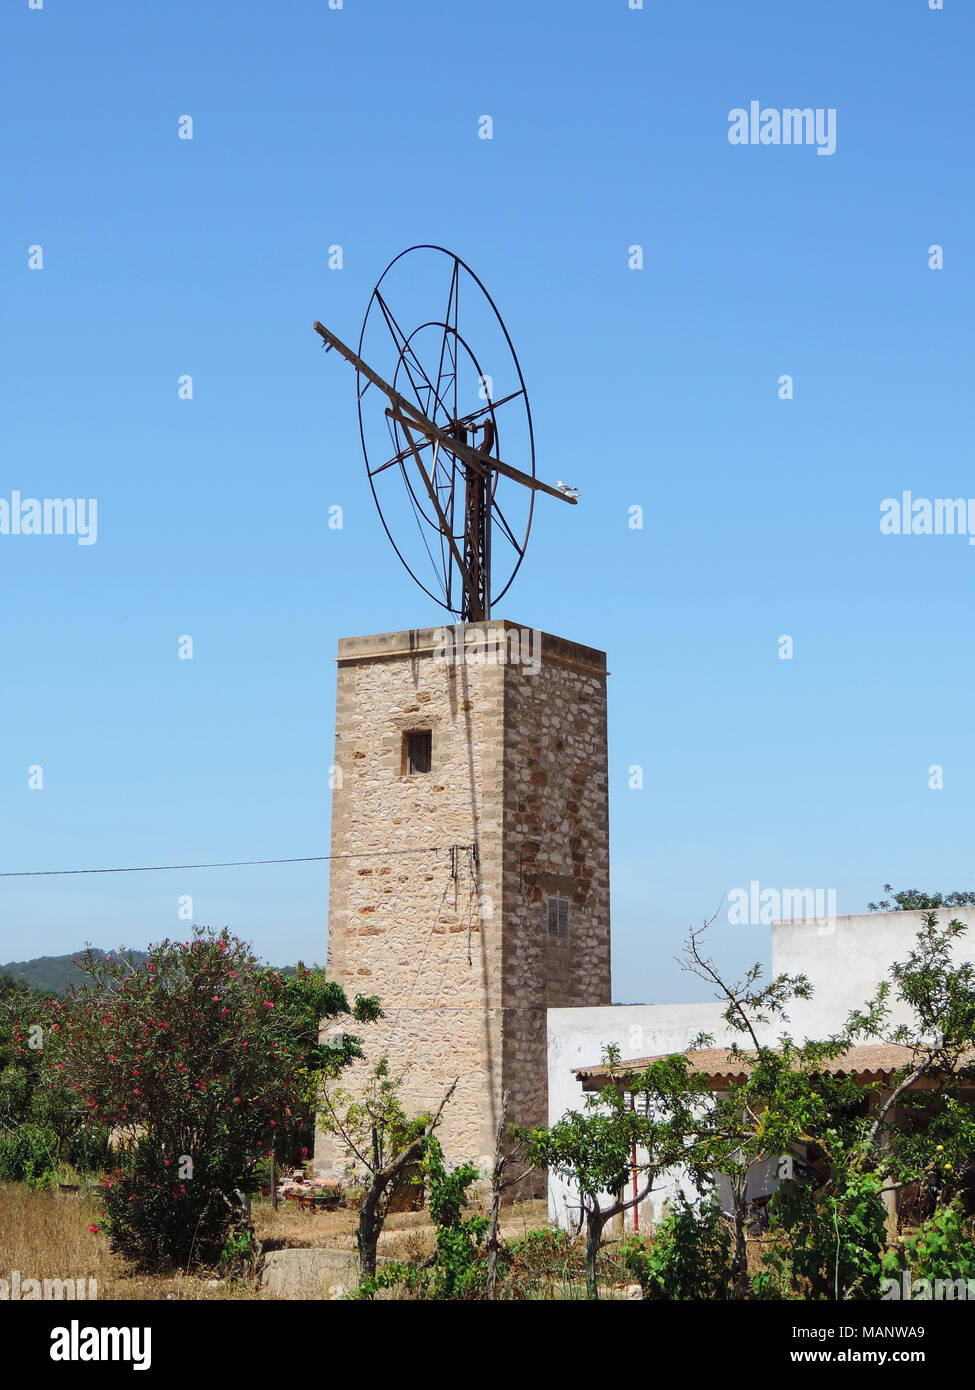 Alte spanische Windmühle und bus Himmel. Historische Windmühle auf der Insel Ibiza, Sommer Szene. Stockfoto